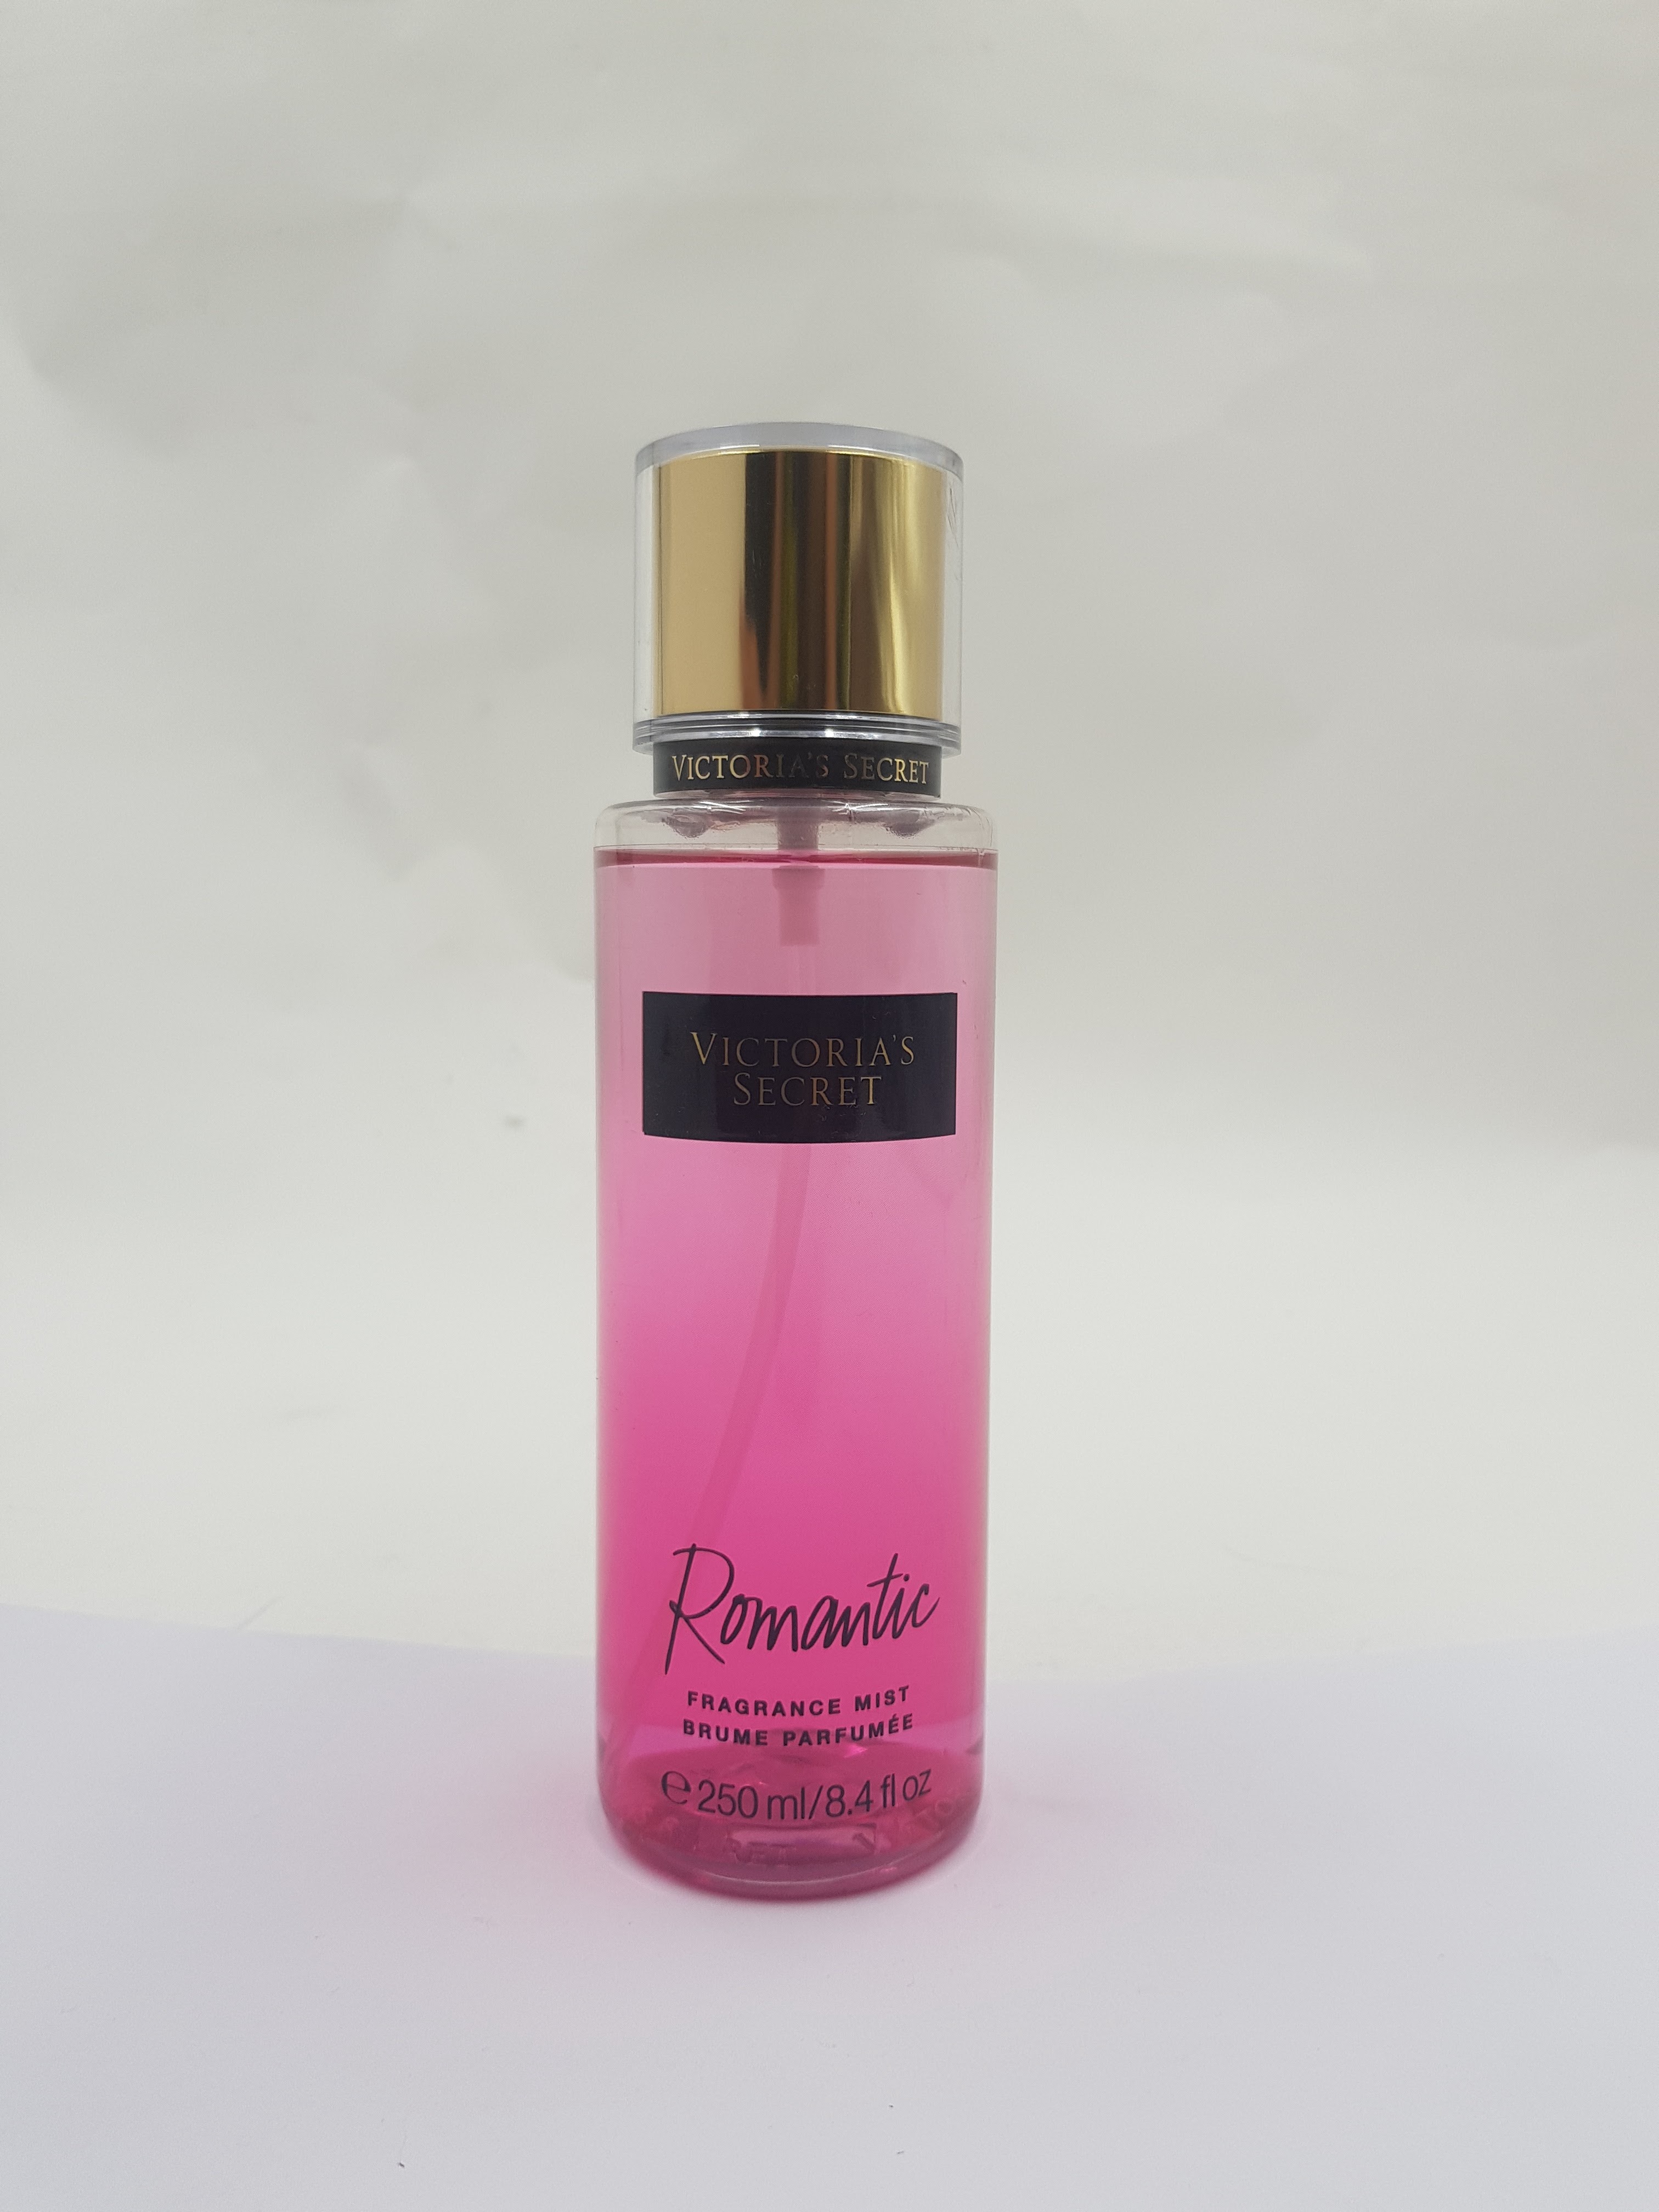 Victoria's Secret Fragrance Mist Brume Parfumee (250ml)